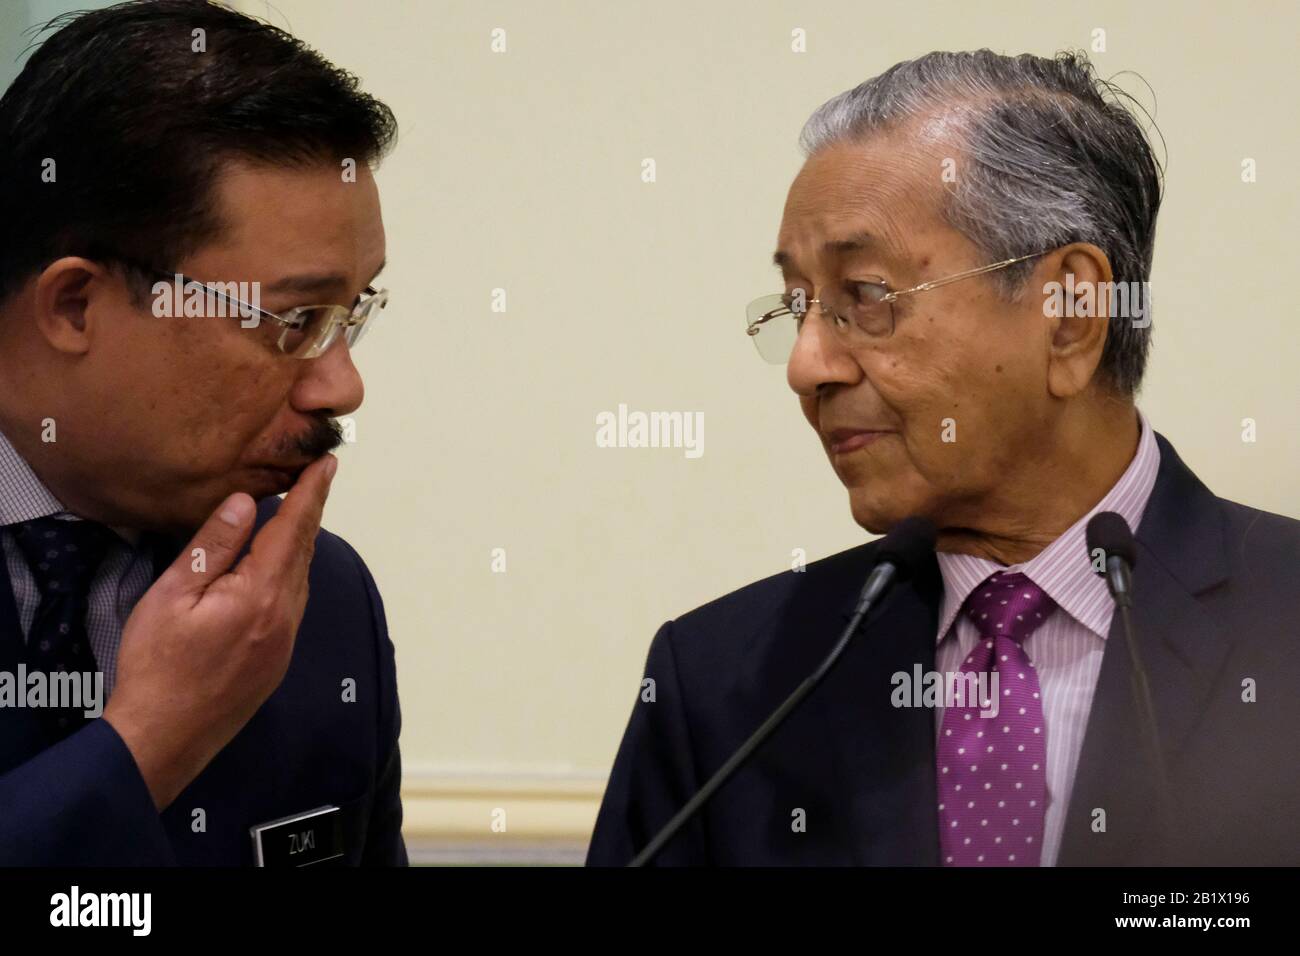 Interims-Premierminister Tun Dr. Mahathir Mohamad hat mit dem malaysischen Chefsekretär Mohd Zuki Ali während der Zeremonie zur Konjunkturbelebung 2020 in Malaysia in Putrajaya gesehen.Malaysia hat Einnahmen von mehr als 20 Milliarden als Konjunkturpaket, um Bedenken hinsichtlich der Auswirkungen des Covid-19-Virus-Ausbruchs zu zerstreuen. Das Konjunkturpaket wird sich auf Tourismus, Investitionen und Konsum konzentrieren, um die Inlandreise anzukurbeln. Stockfoto